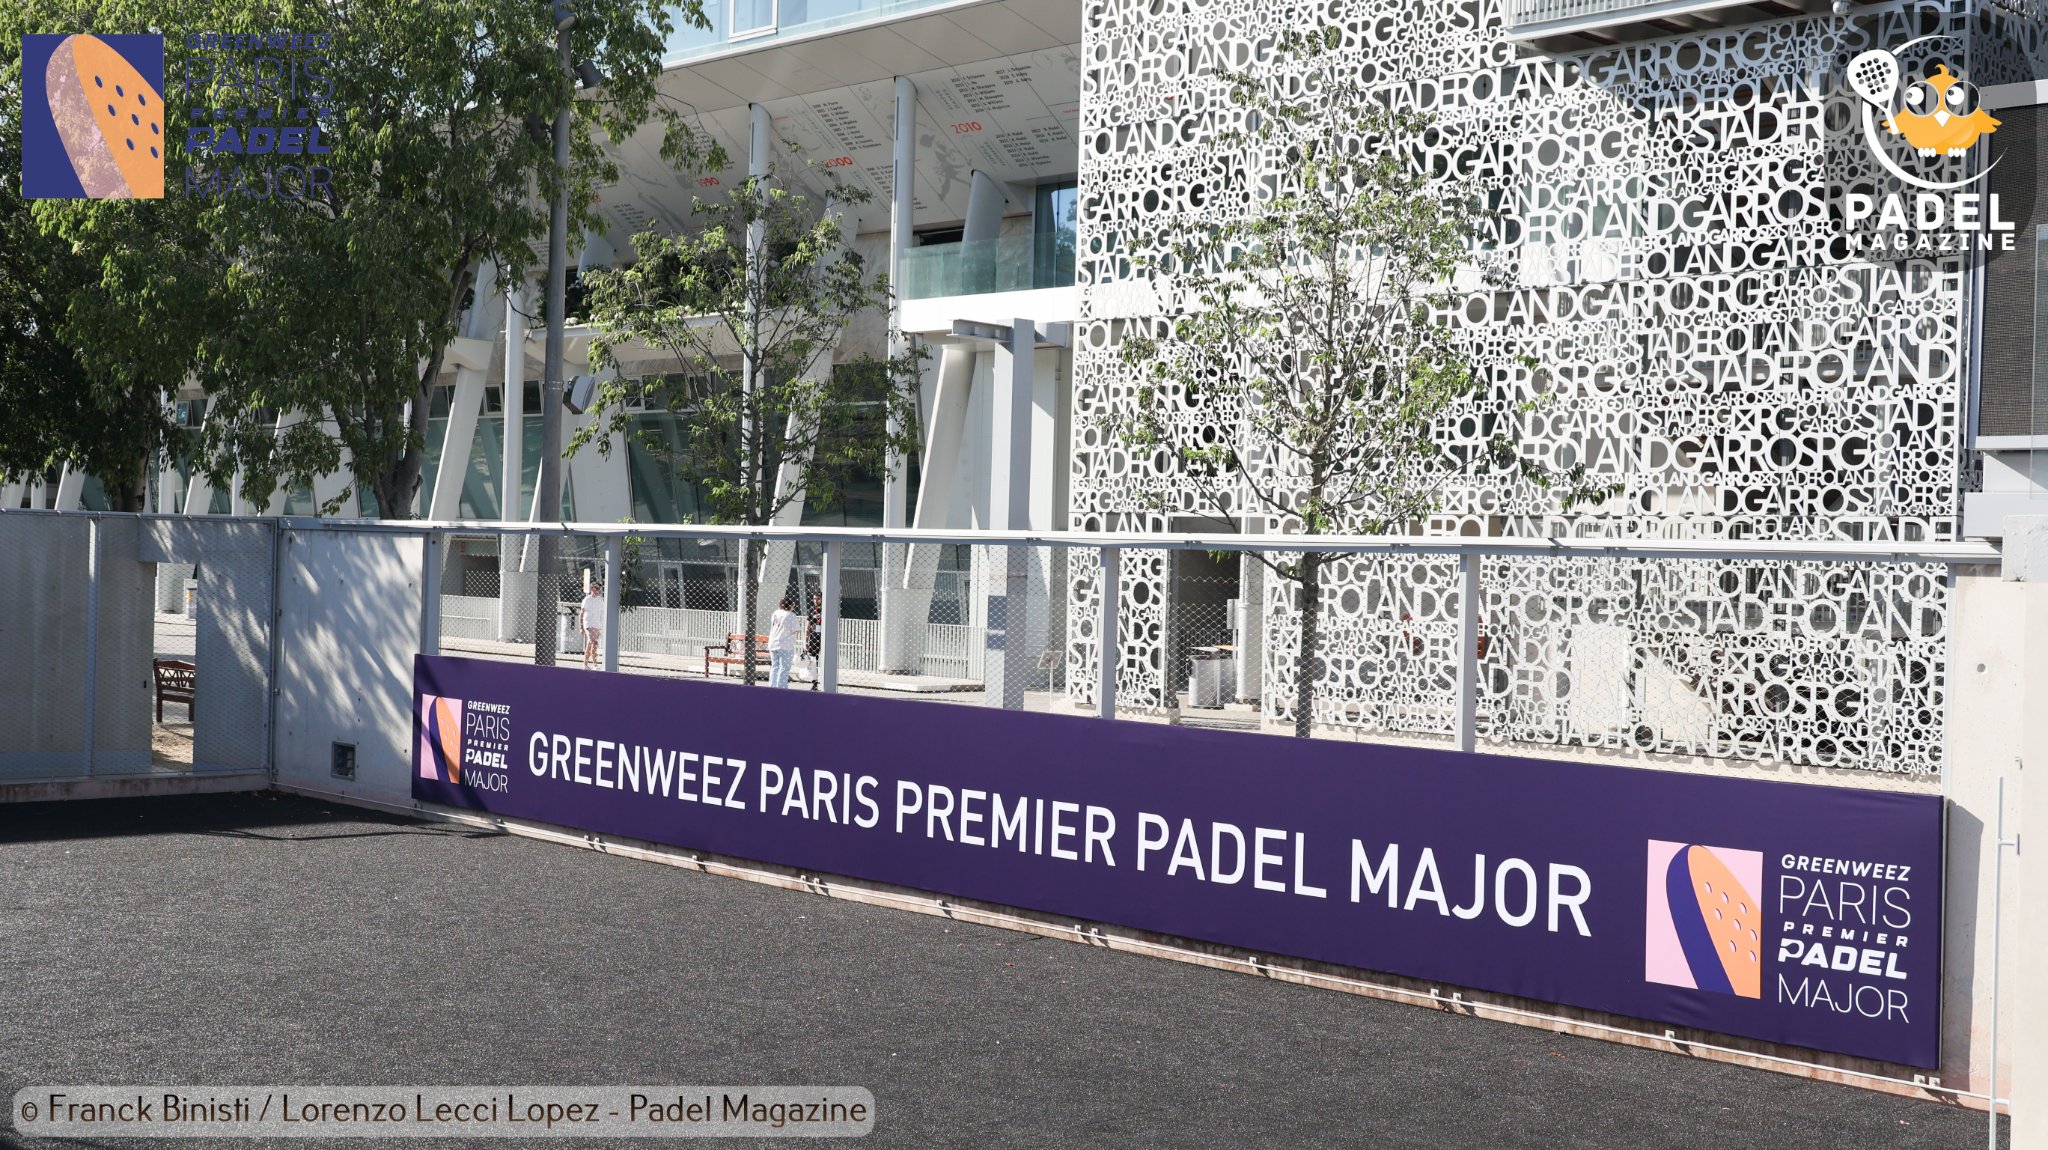 Greenweez Paris Premier Padel Major : kwartaalresultaten